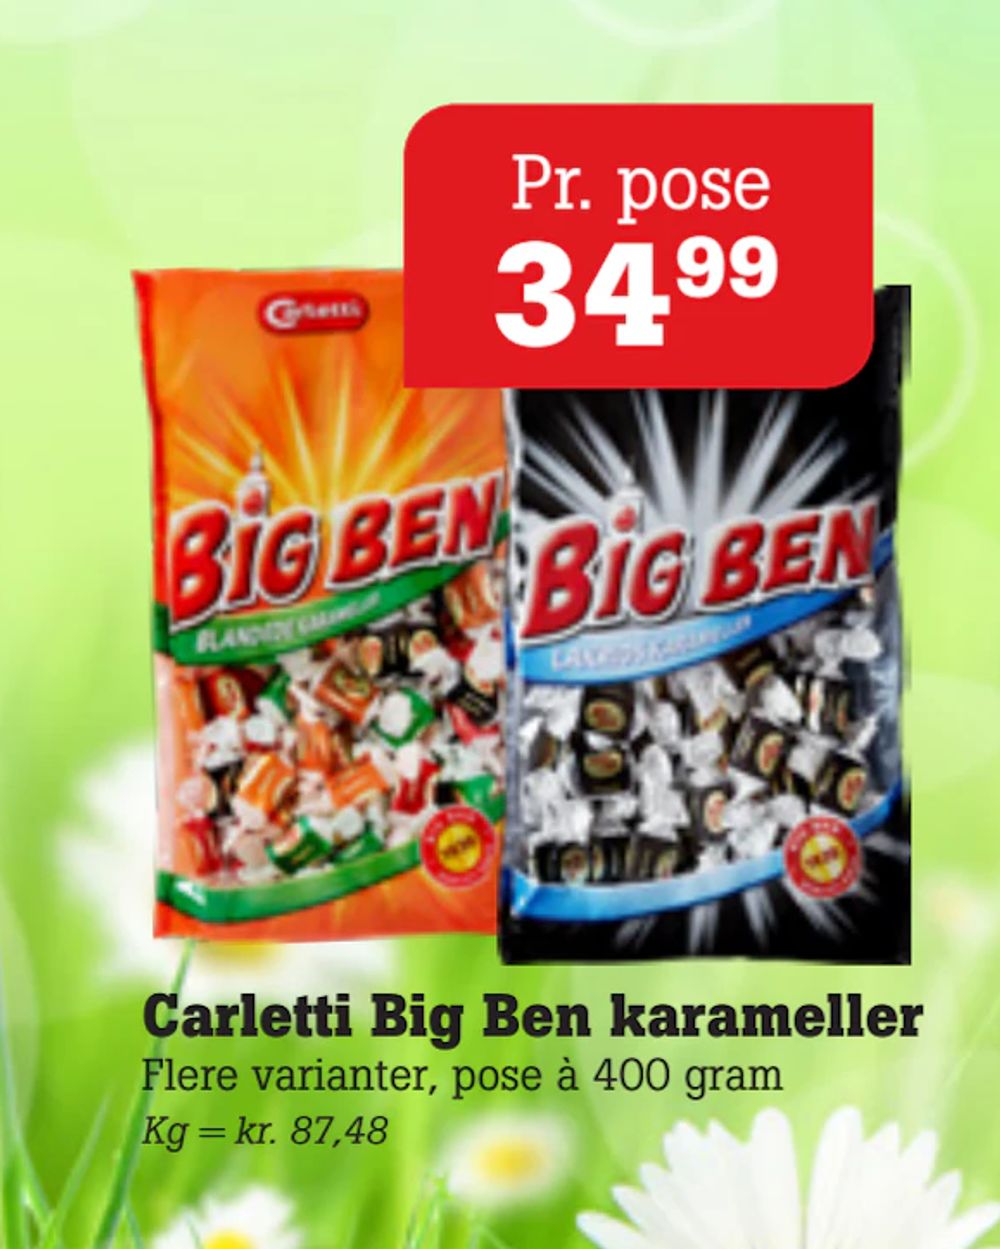 Tilbud på Carletti Big Ben karameller fra Poetzsch Padborg til 34,99 kr.